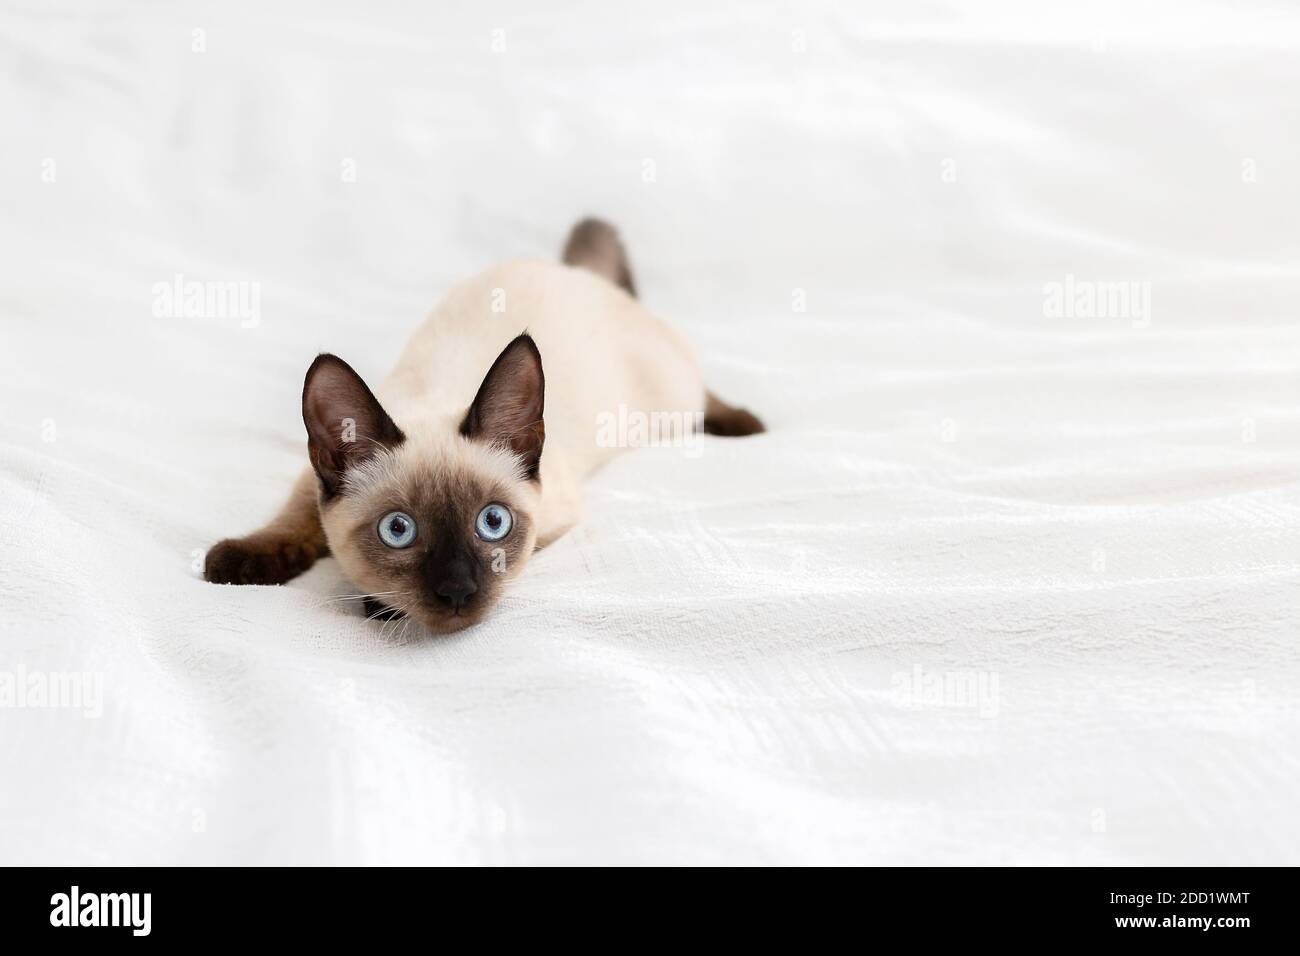 Ein verspieltes Kätzchen liegt in einer seltsamen Pose auf einem hellen Hintergrund. Stockfoto